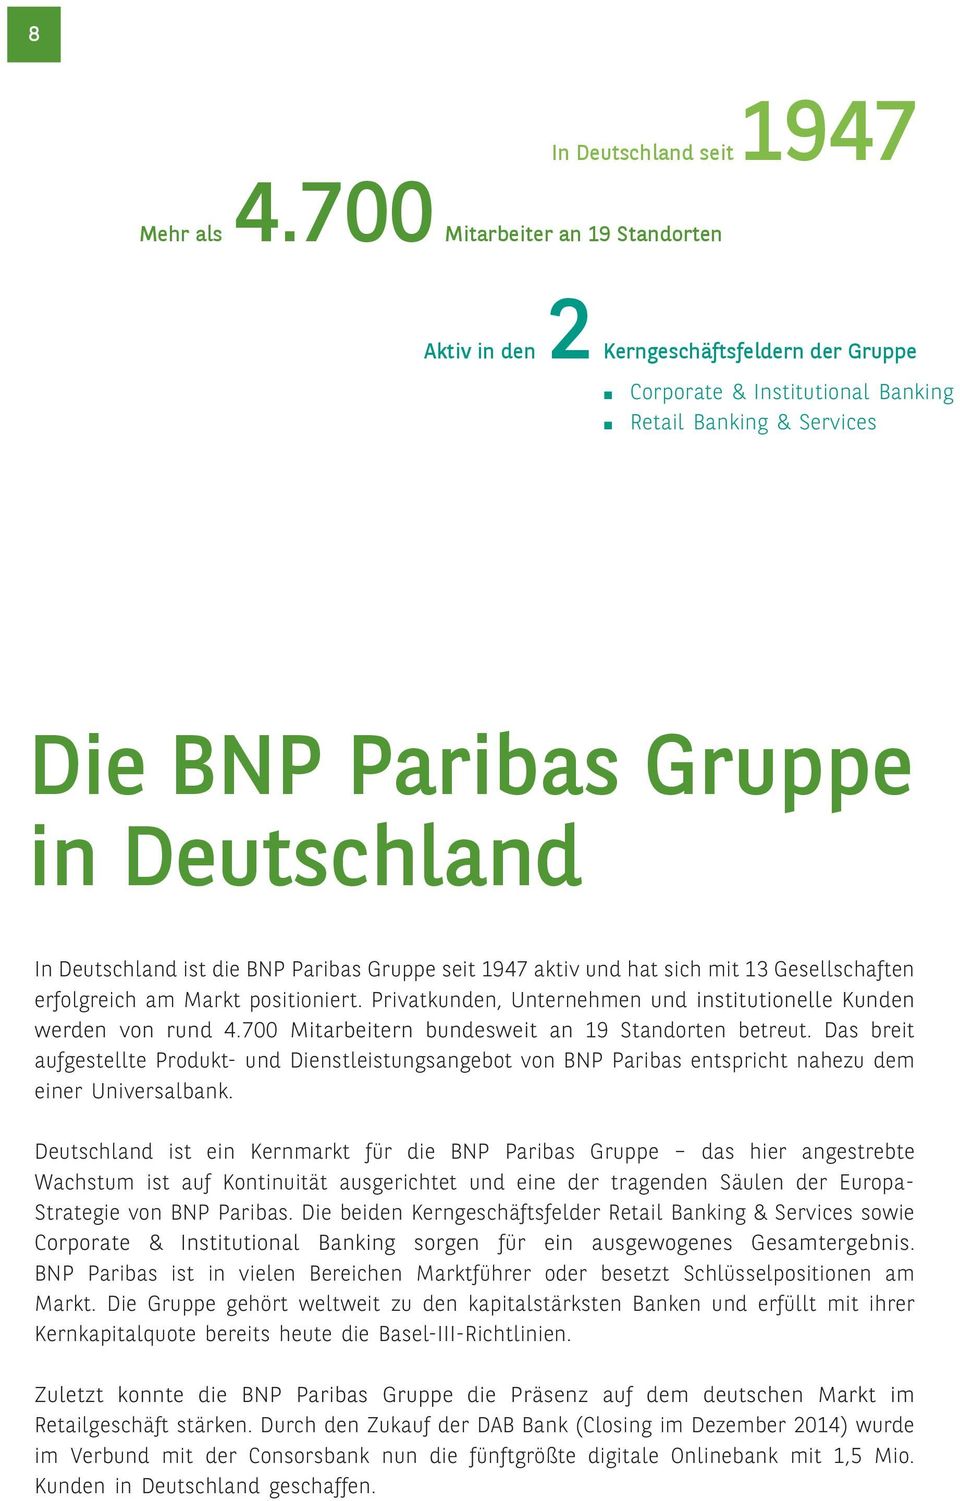 die BNP Paribas Gruppe seit 1947 aktiv und hat sich mit 13 Gesellschaften erfolgreich am Markt positioniert. Privatkunden, Unternehmen und institutionelle Kunden werden von rund 4.